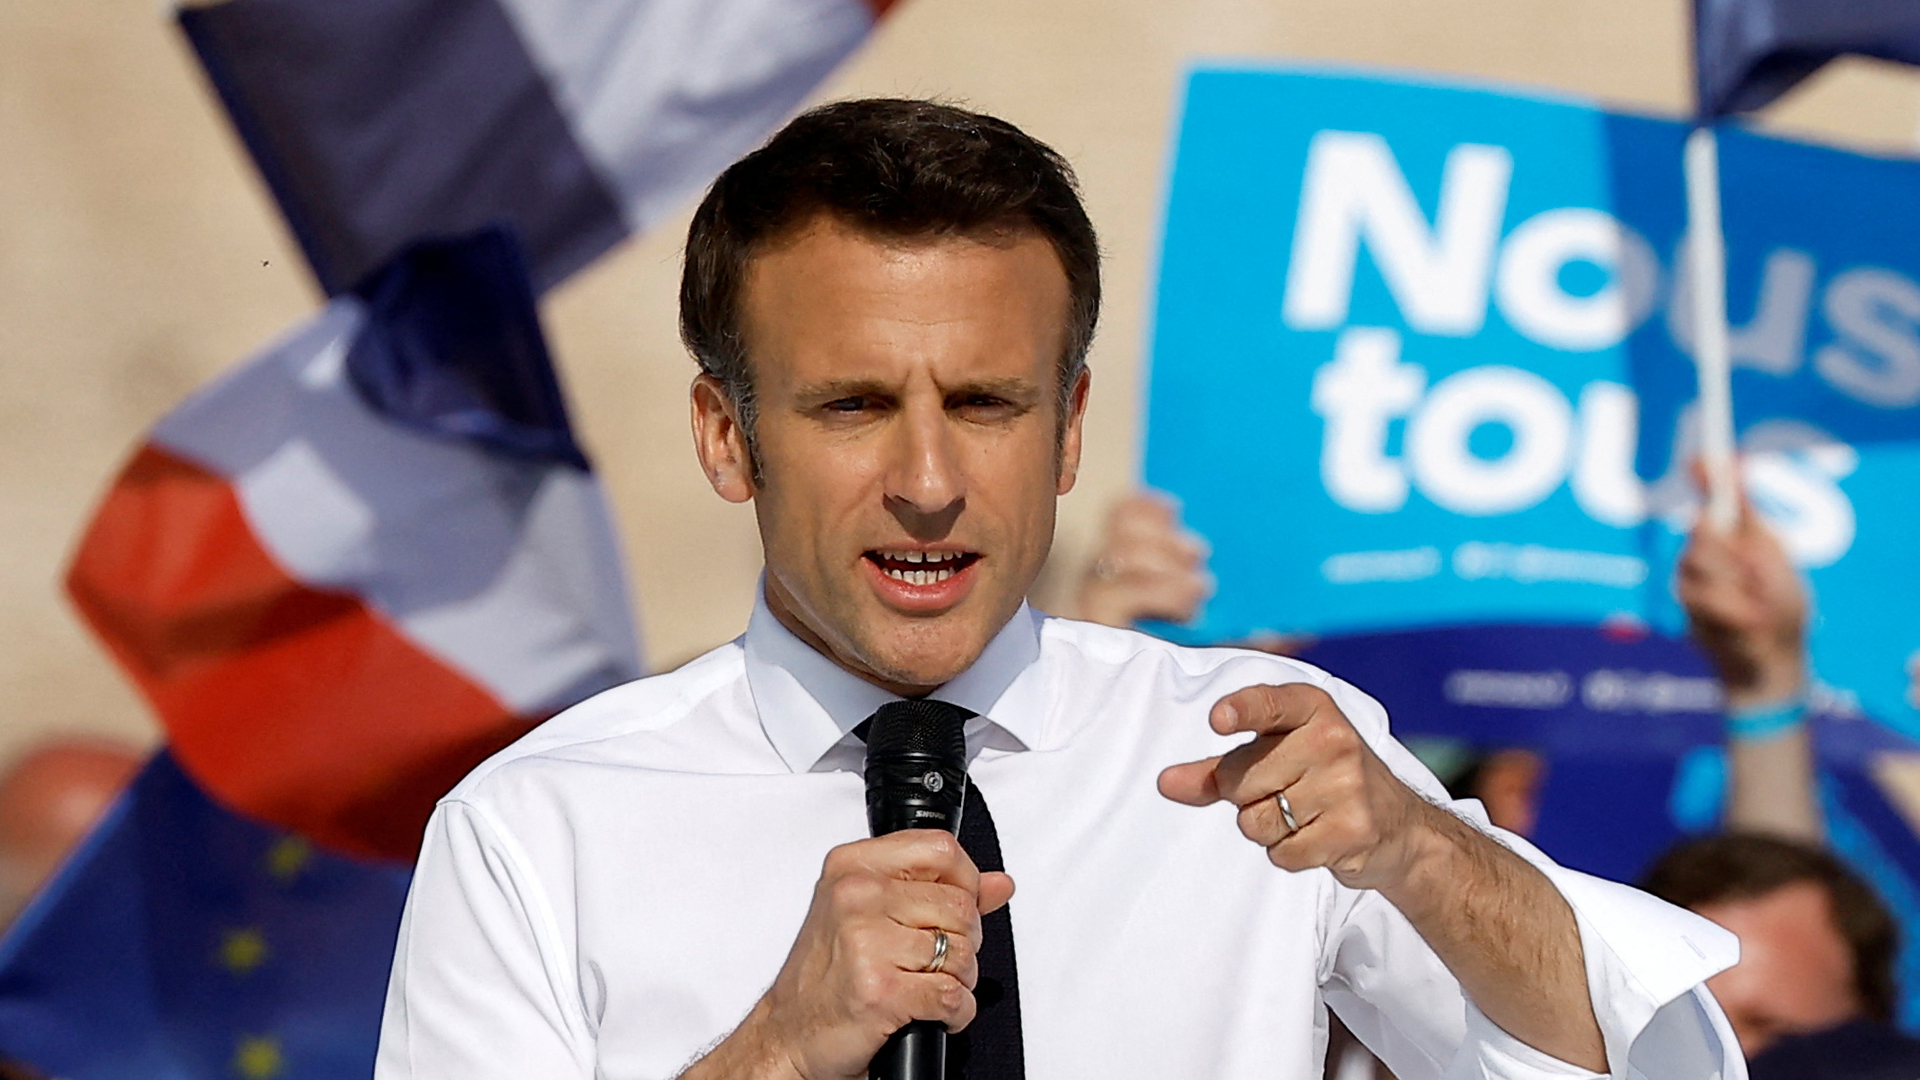 Frankreichs Präsident Emmanuel Macron spricht bei einem Wahlkampfauftritt | REUTERS